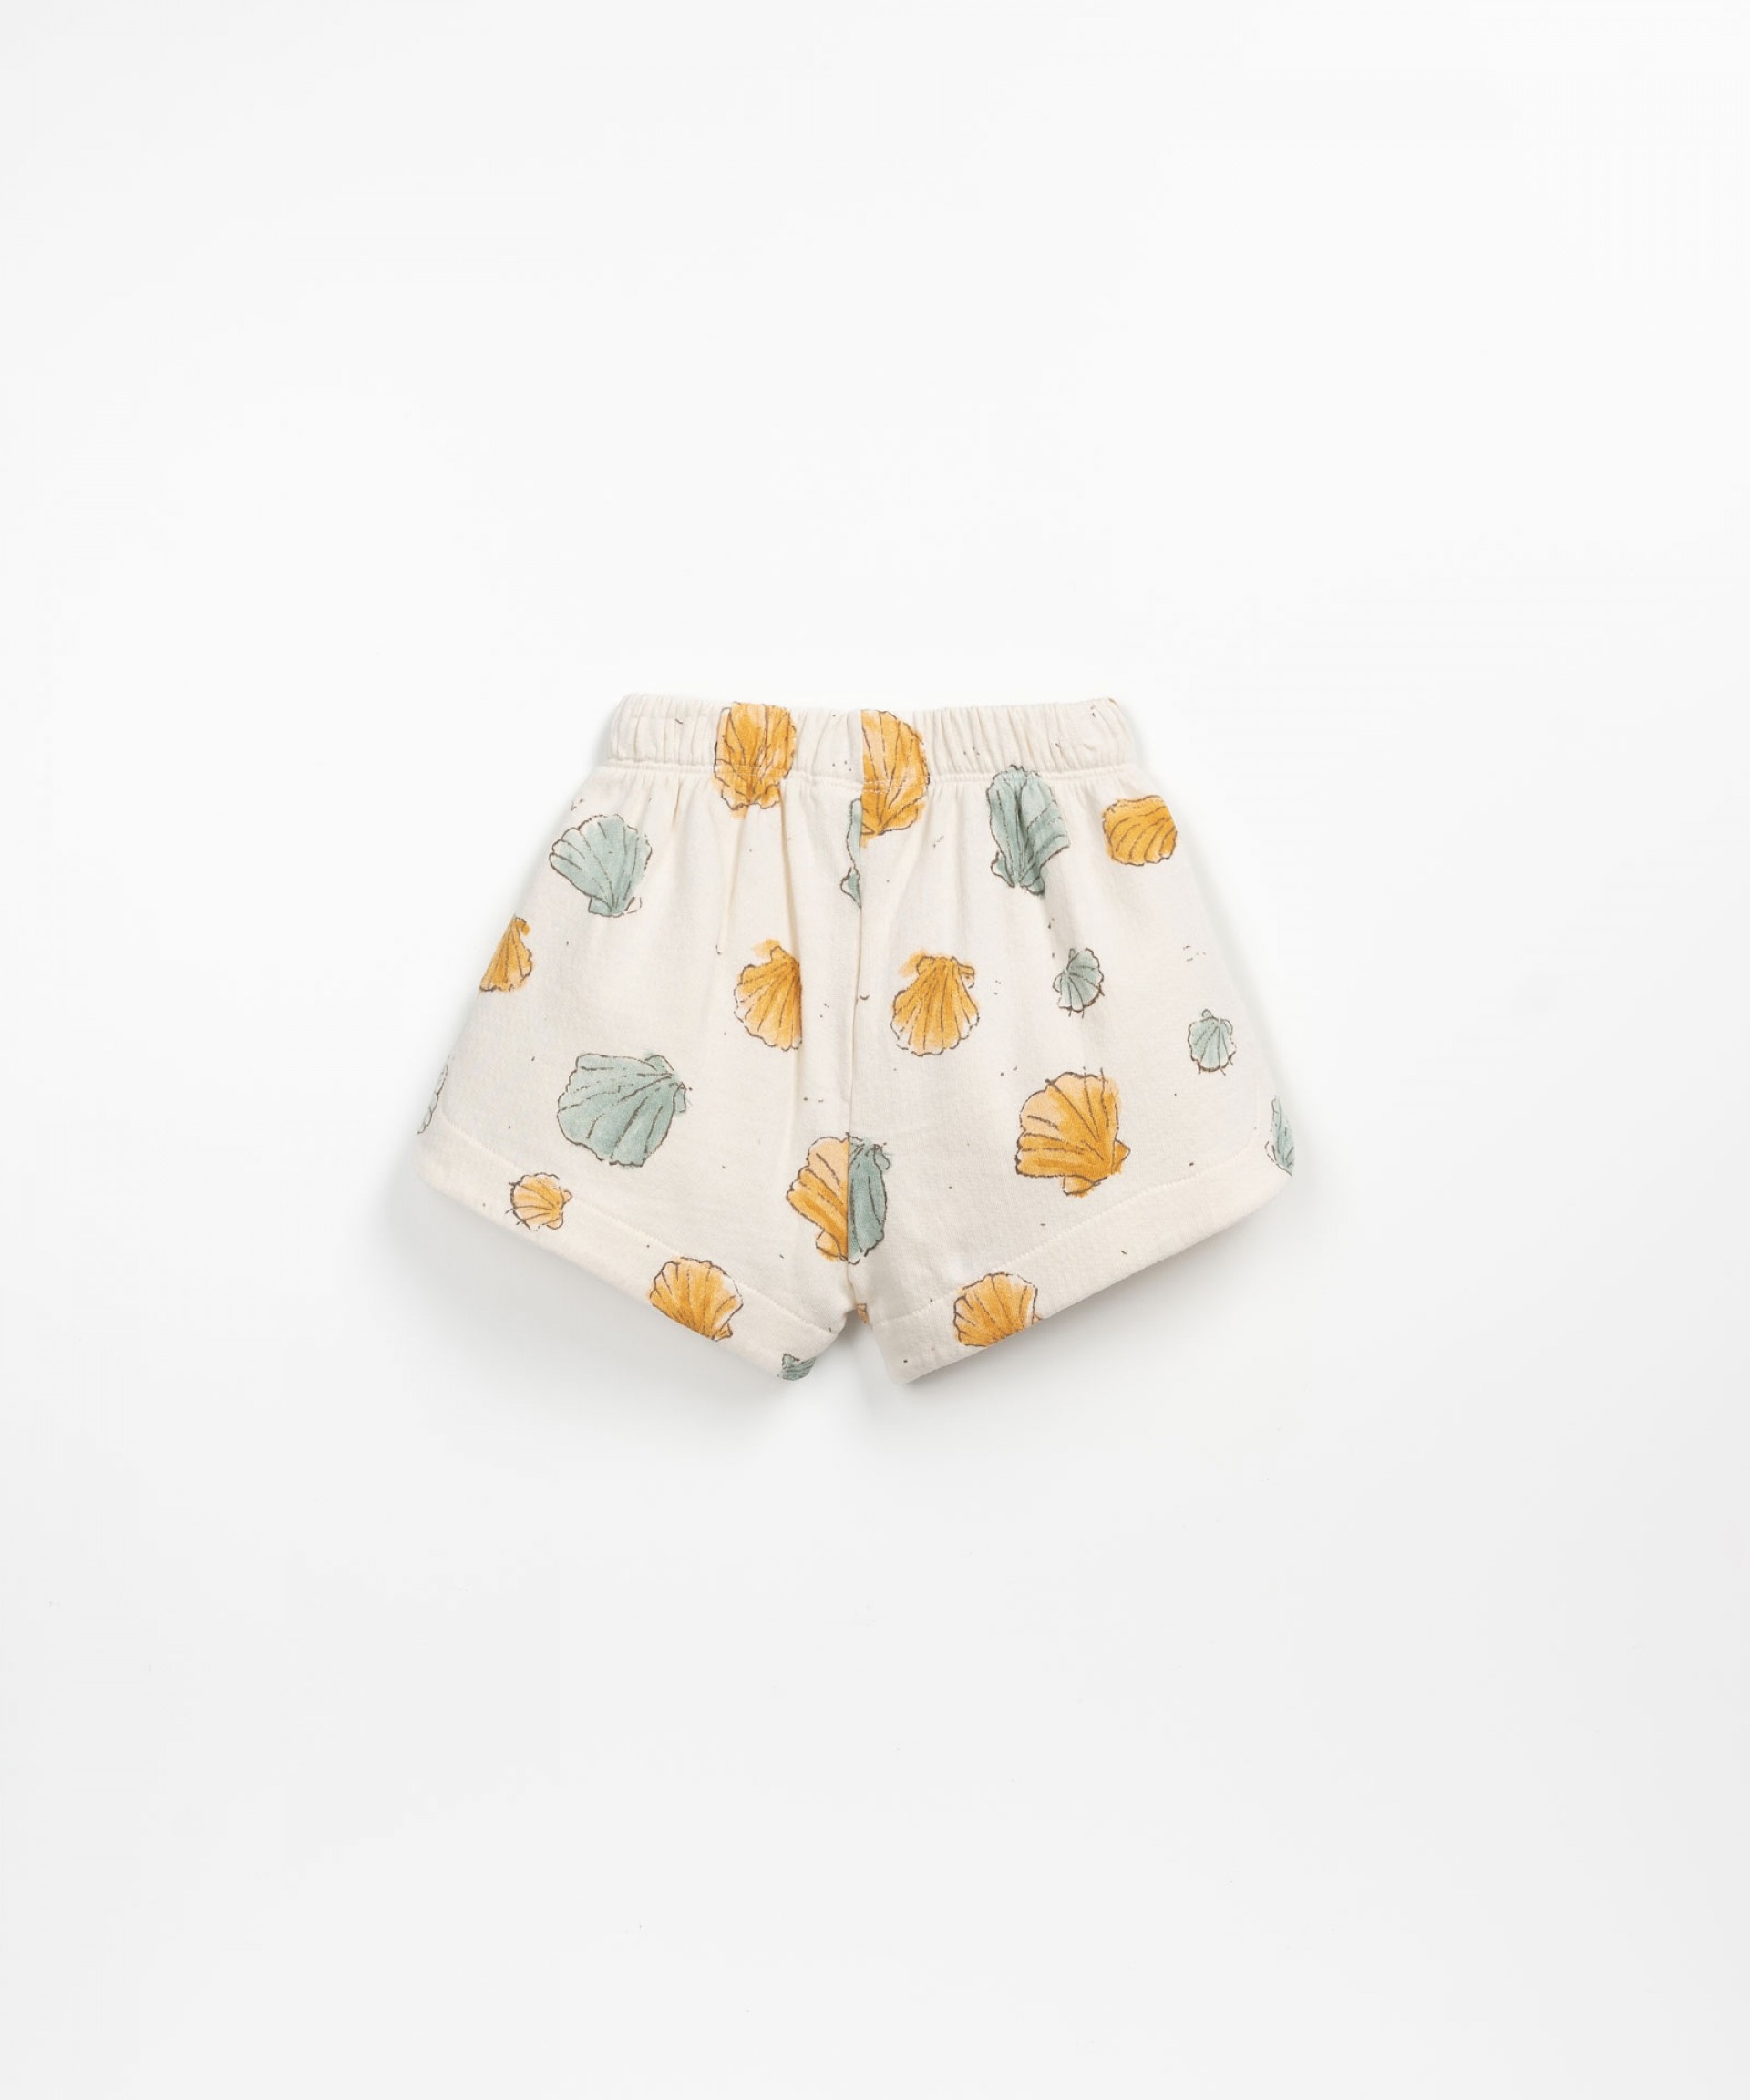 Pantaln corto con cordn decorativo | Textile Art